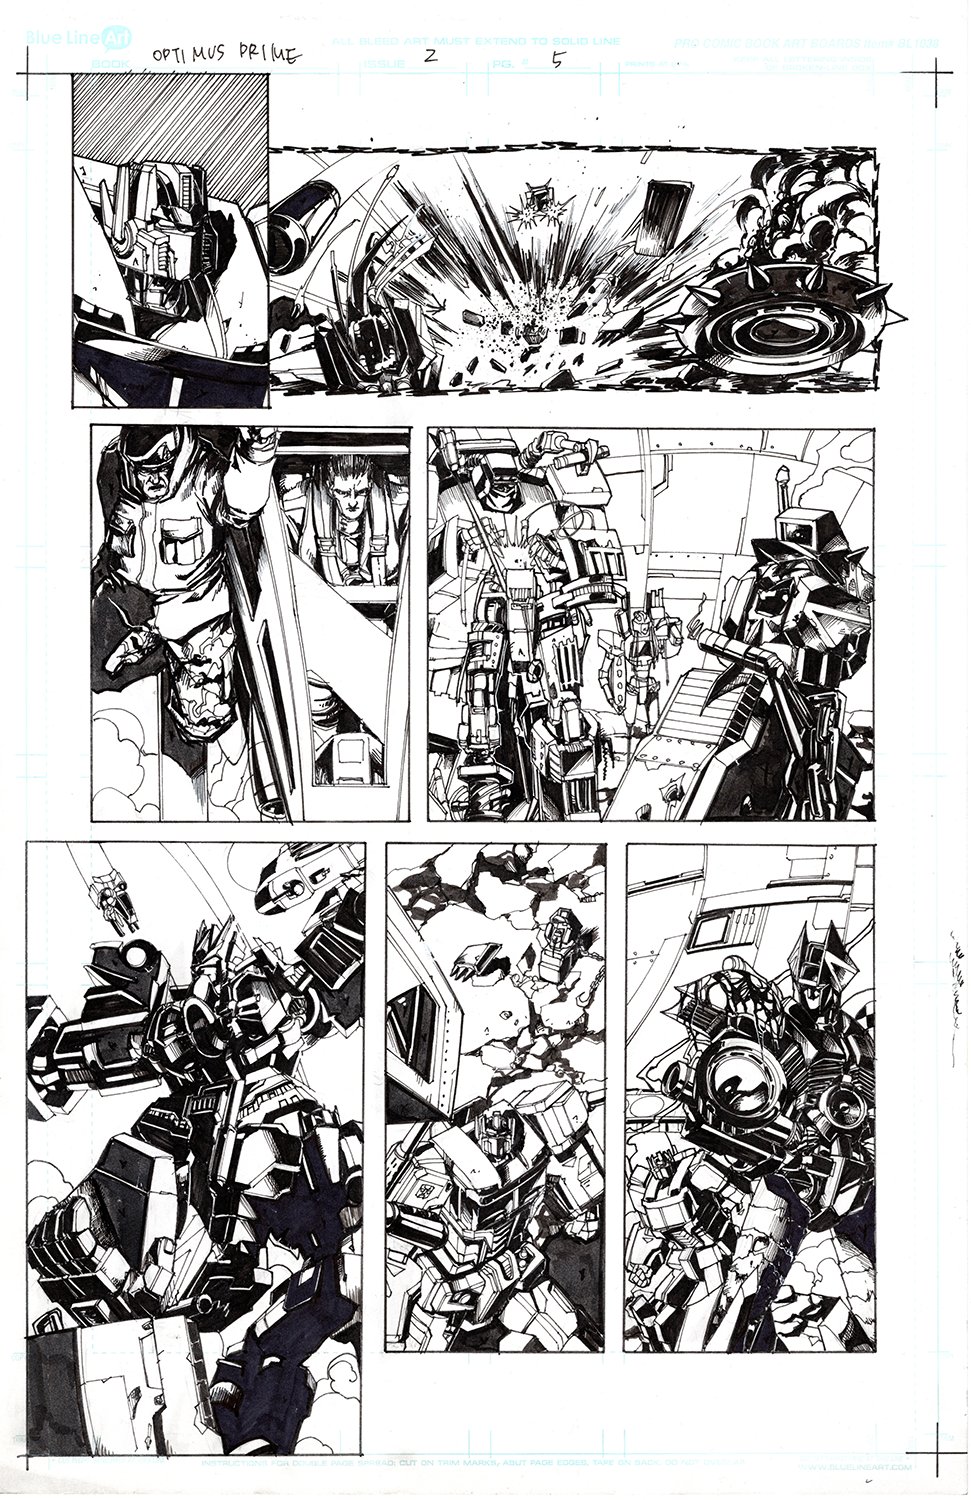 Optimus Prime #2 Page 05